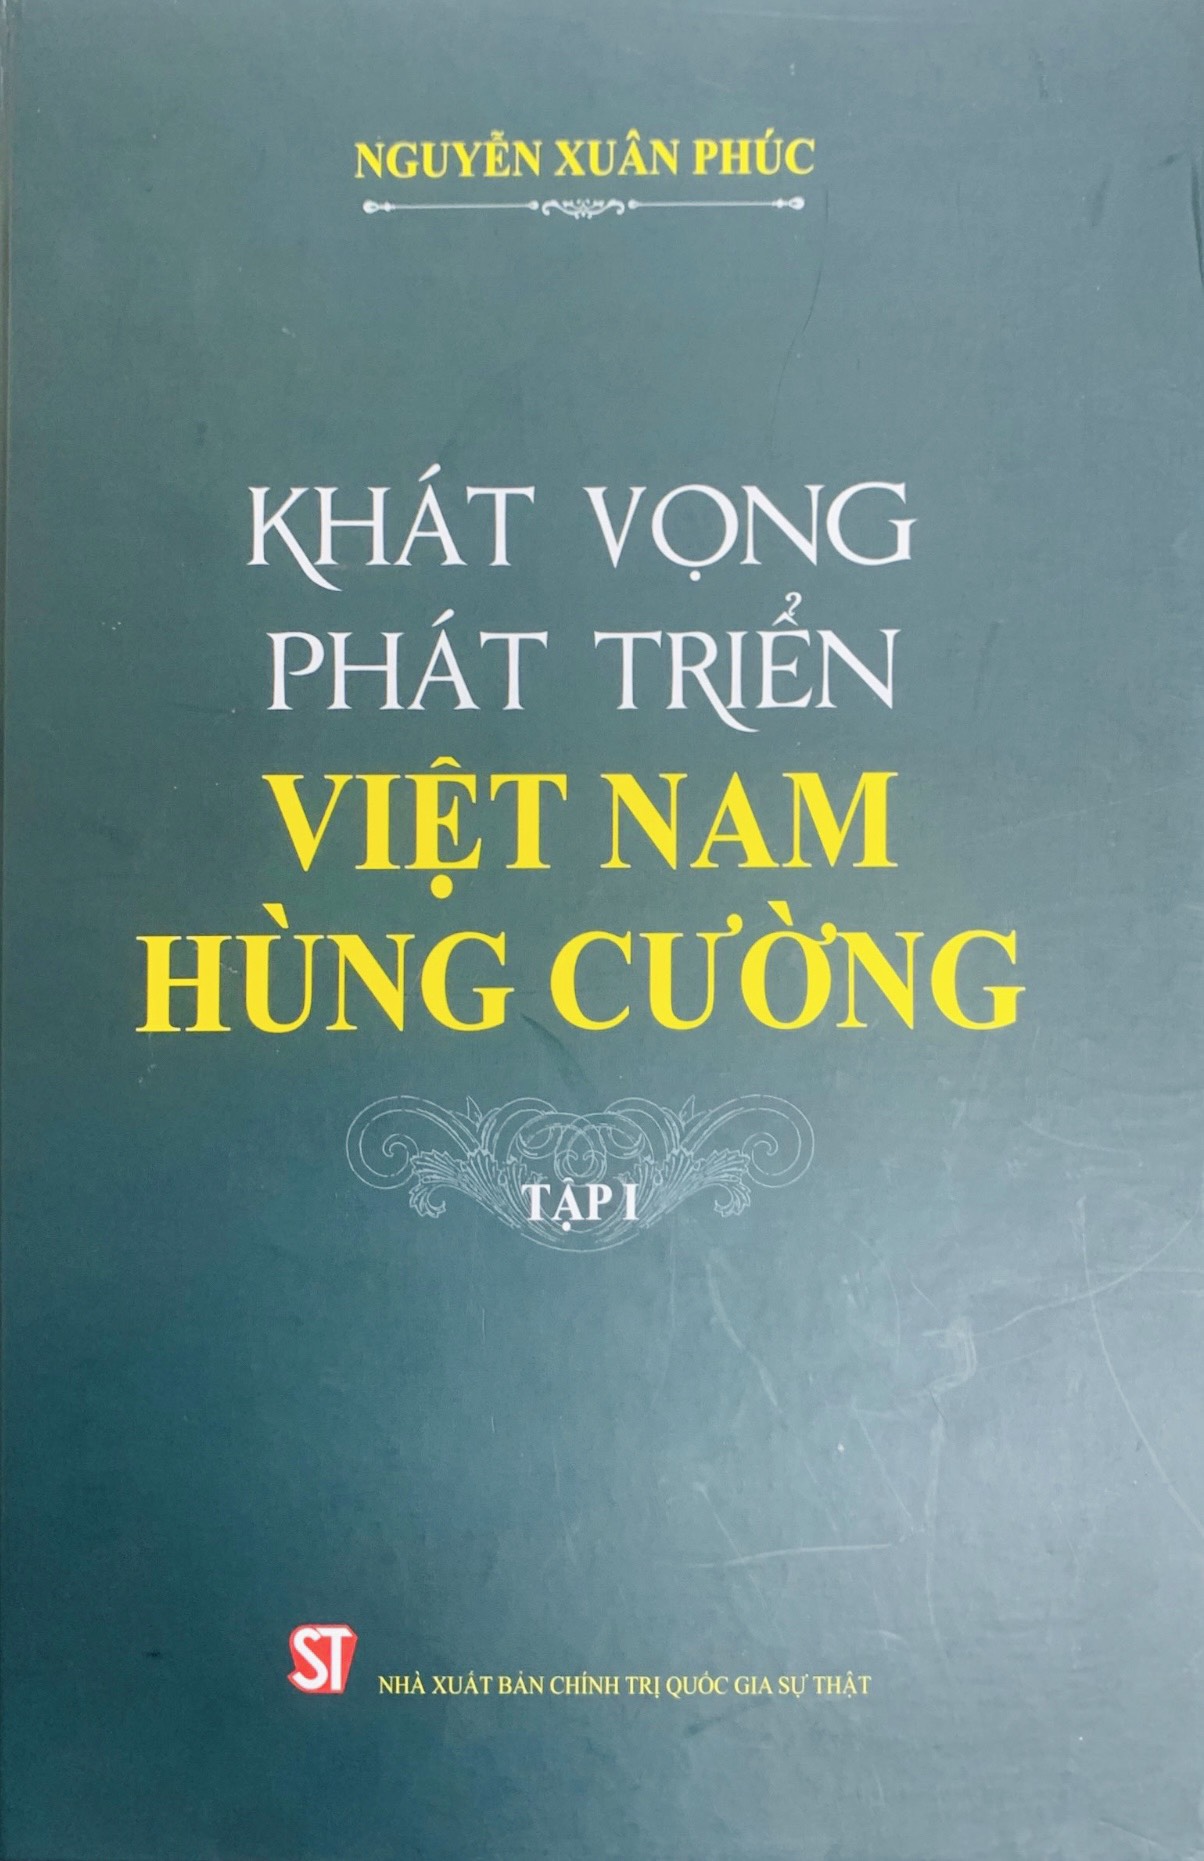 Khát vọng phát triển Việt Nam hùng cường, tập I